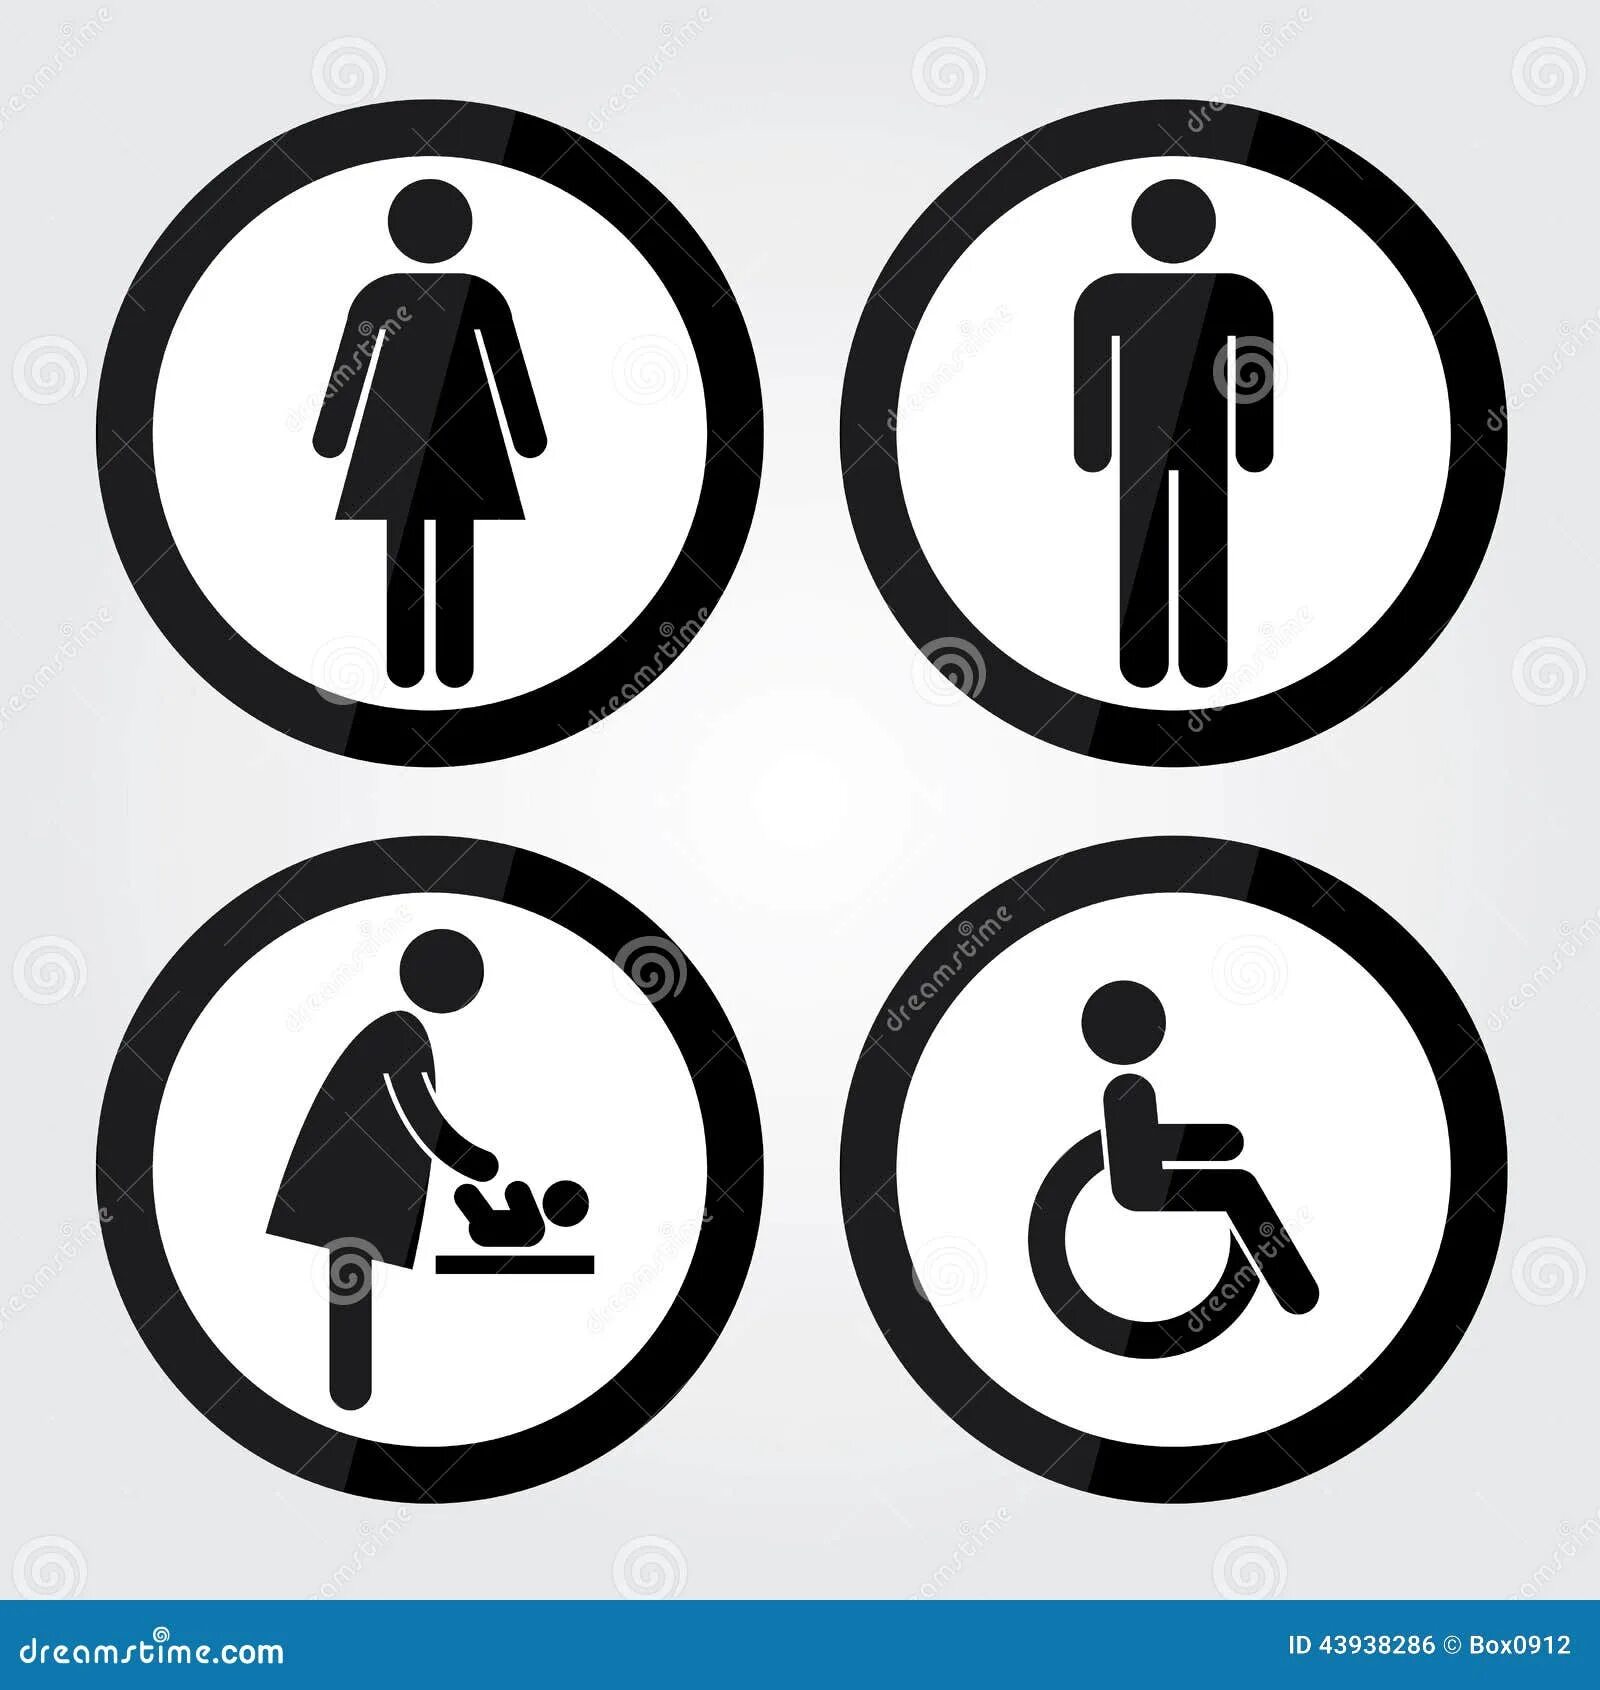 Человек в кружочке знак. Знак «туалет». Знак человек в круге. Табличка туалет мужской и женский. Значок Уборной в круге.